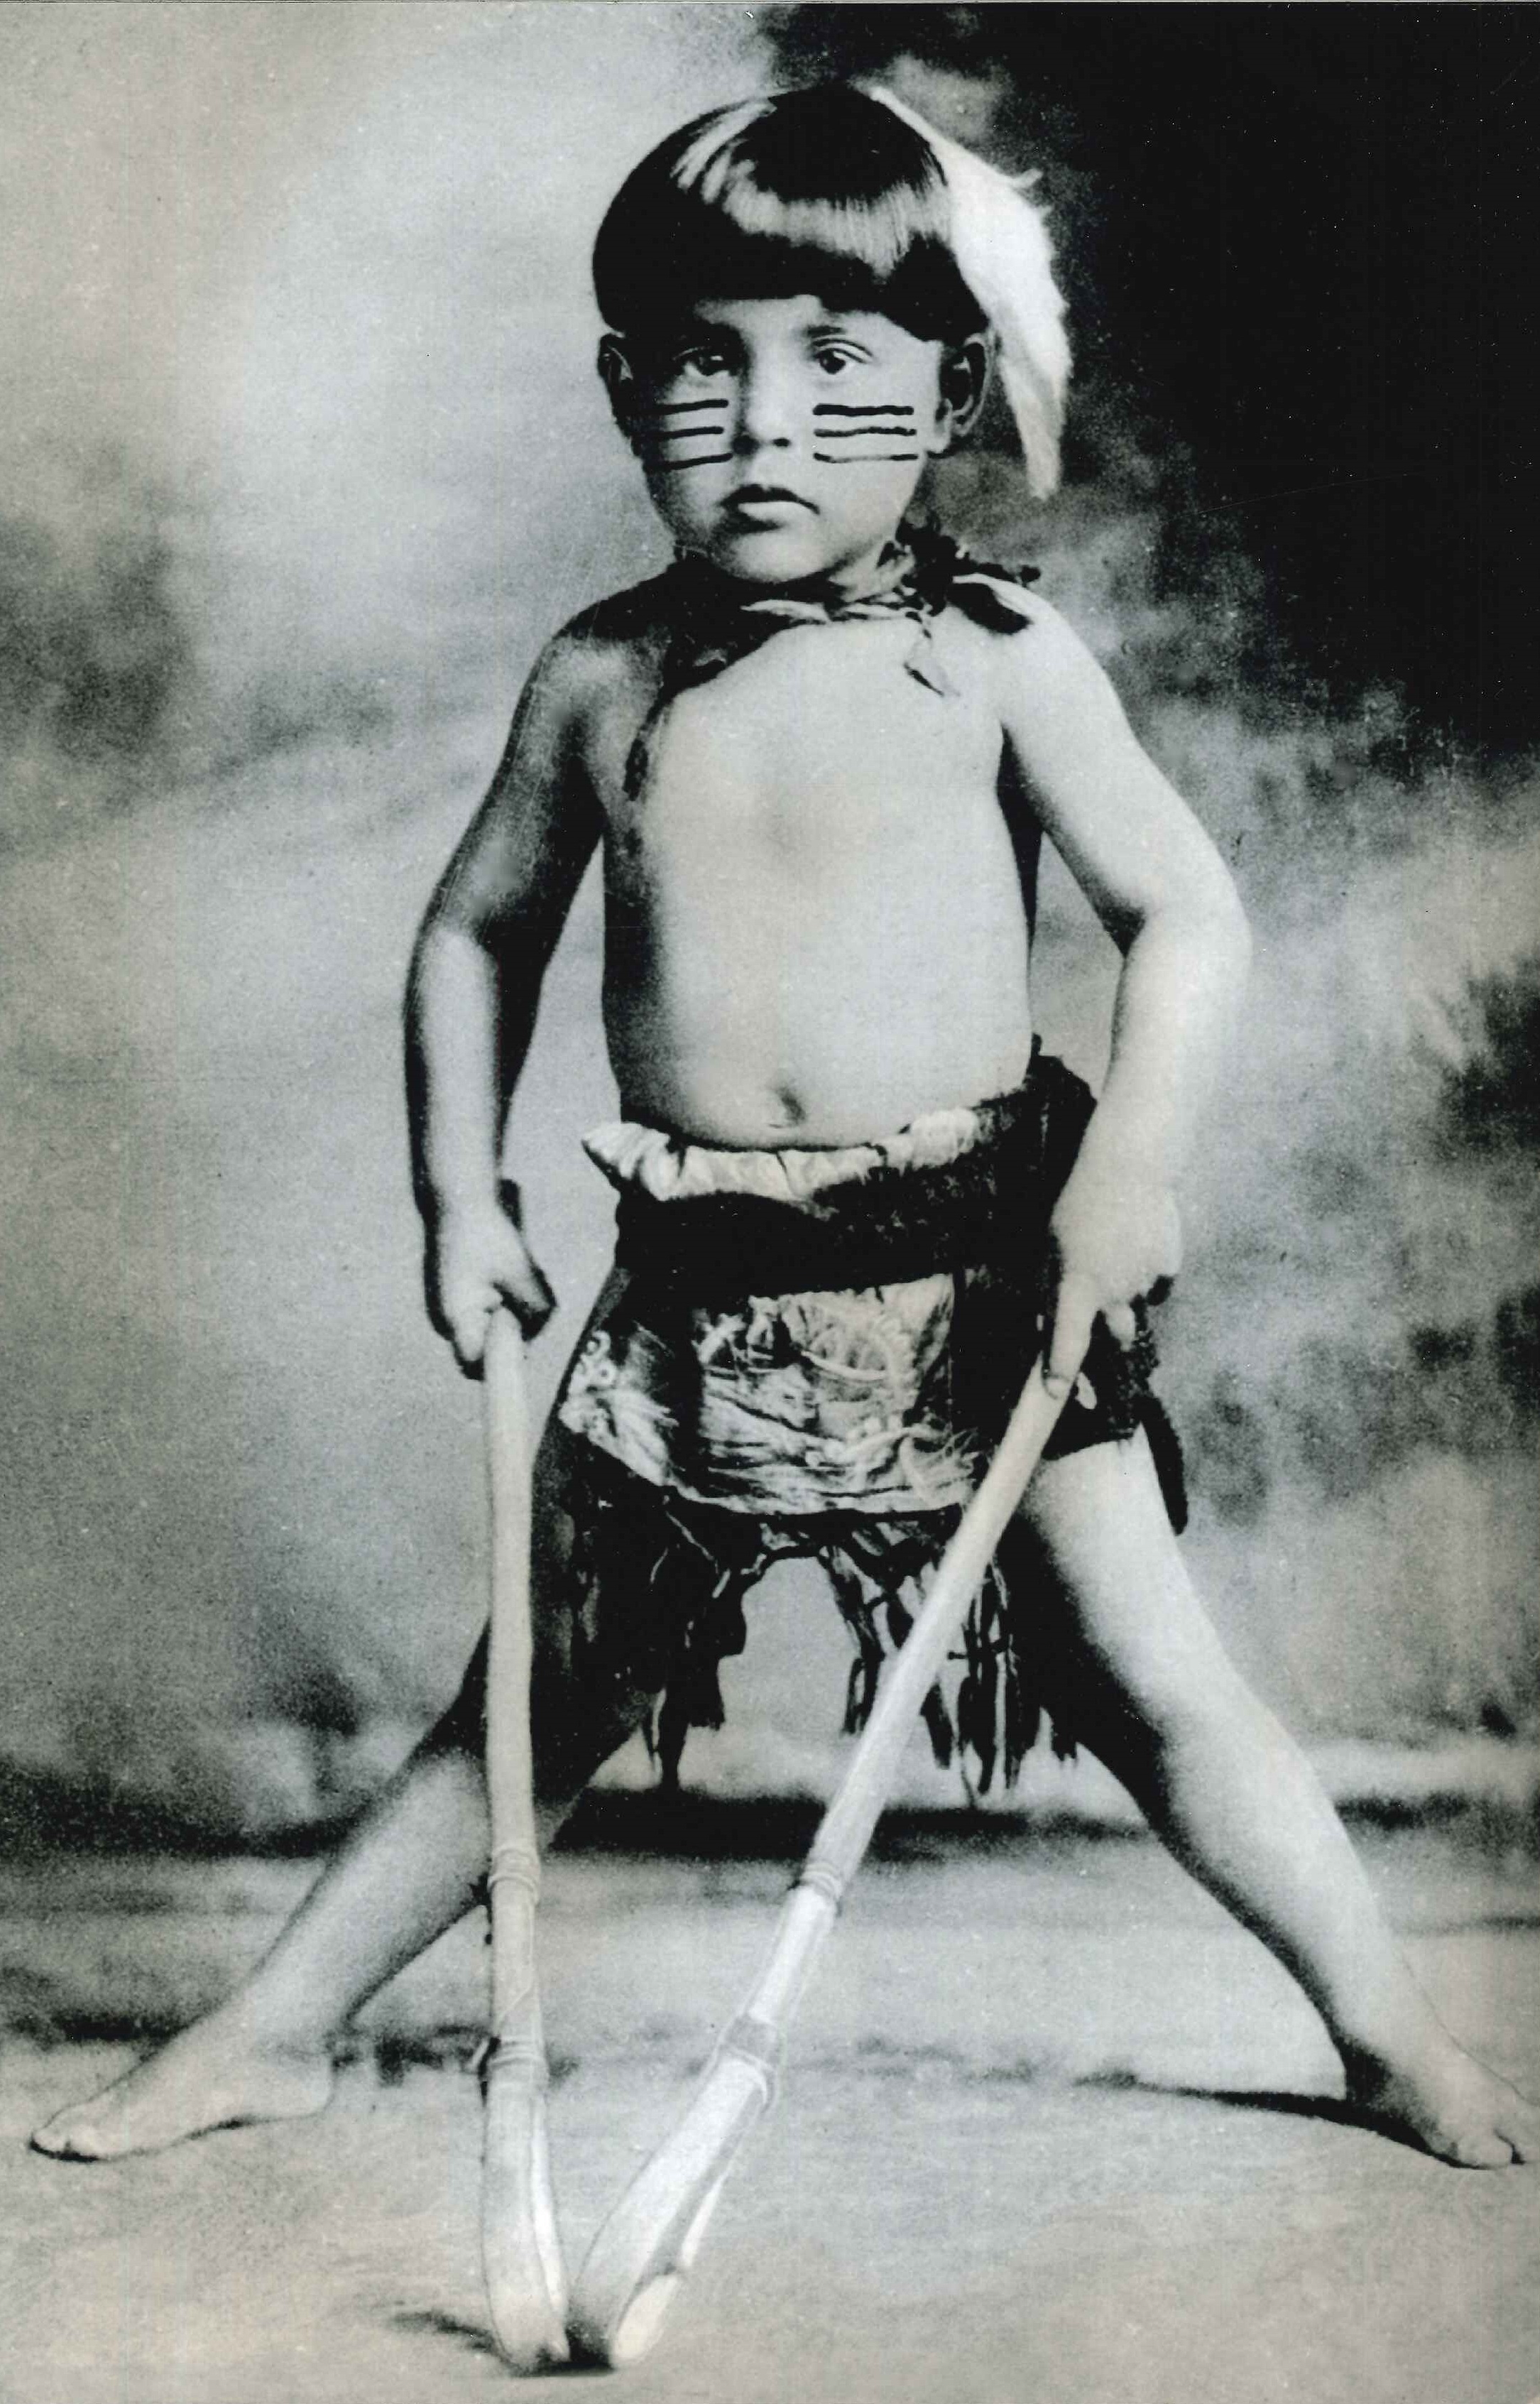 Seminole Boy